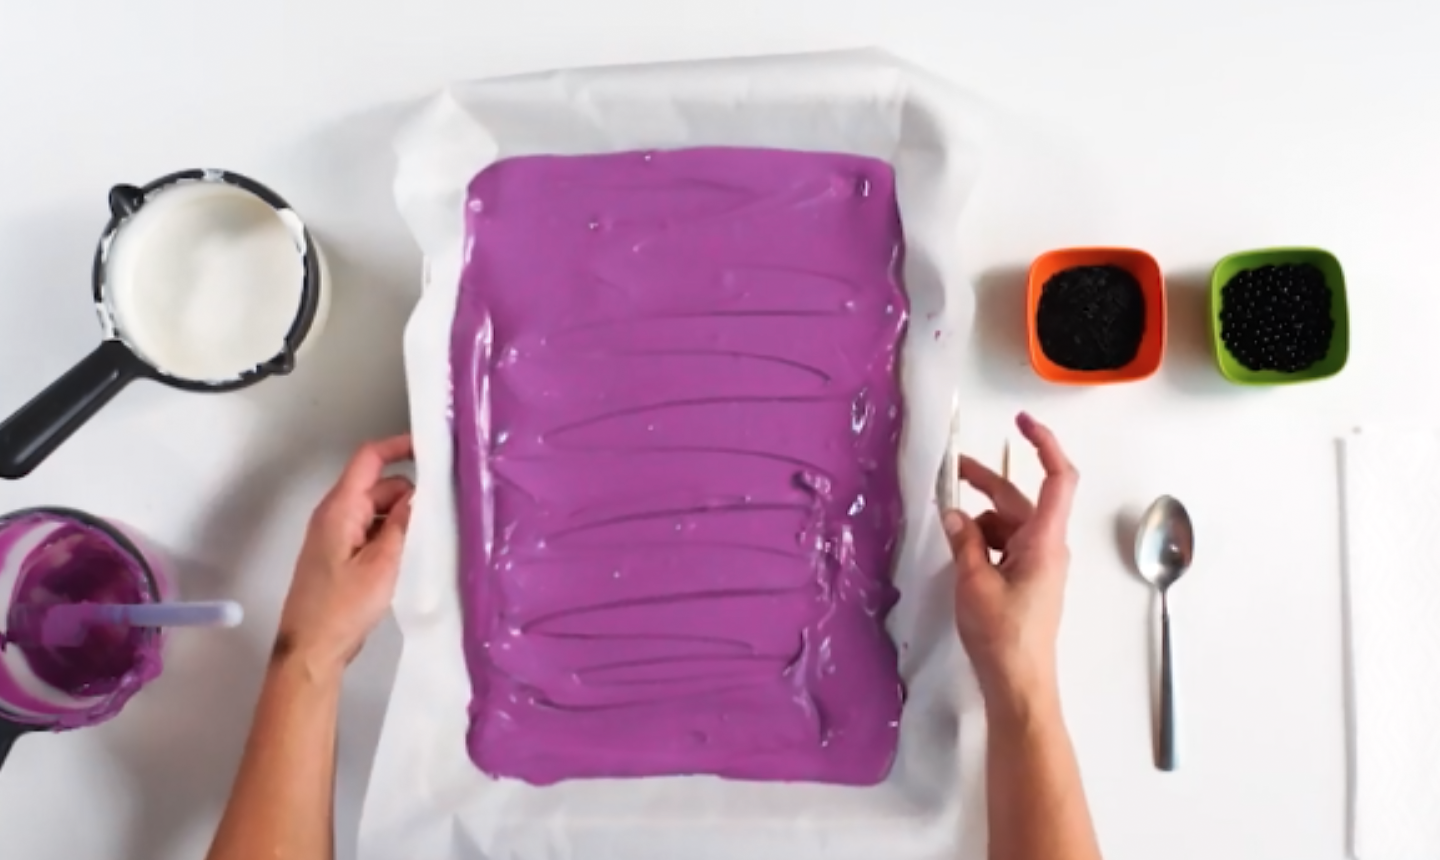 purple candy melts in a baking sheet